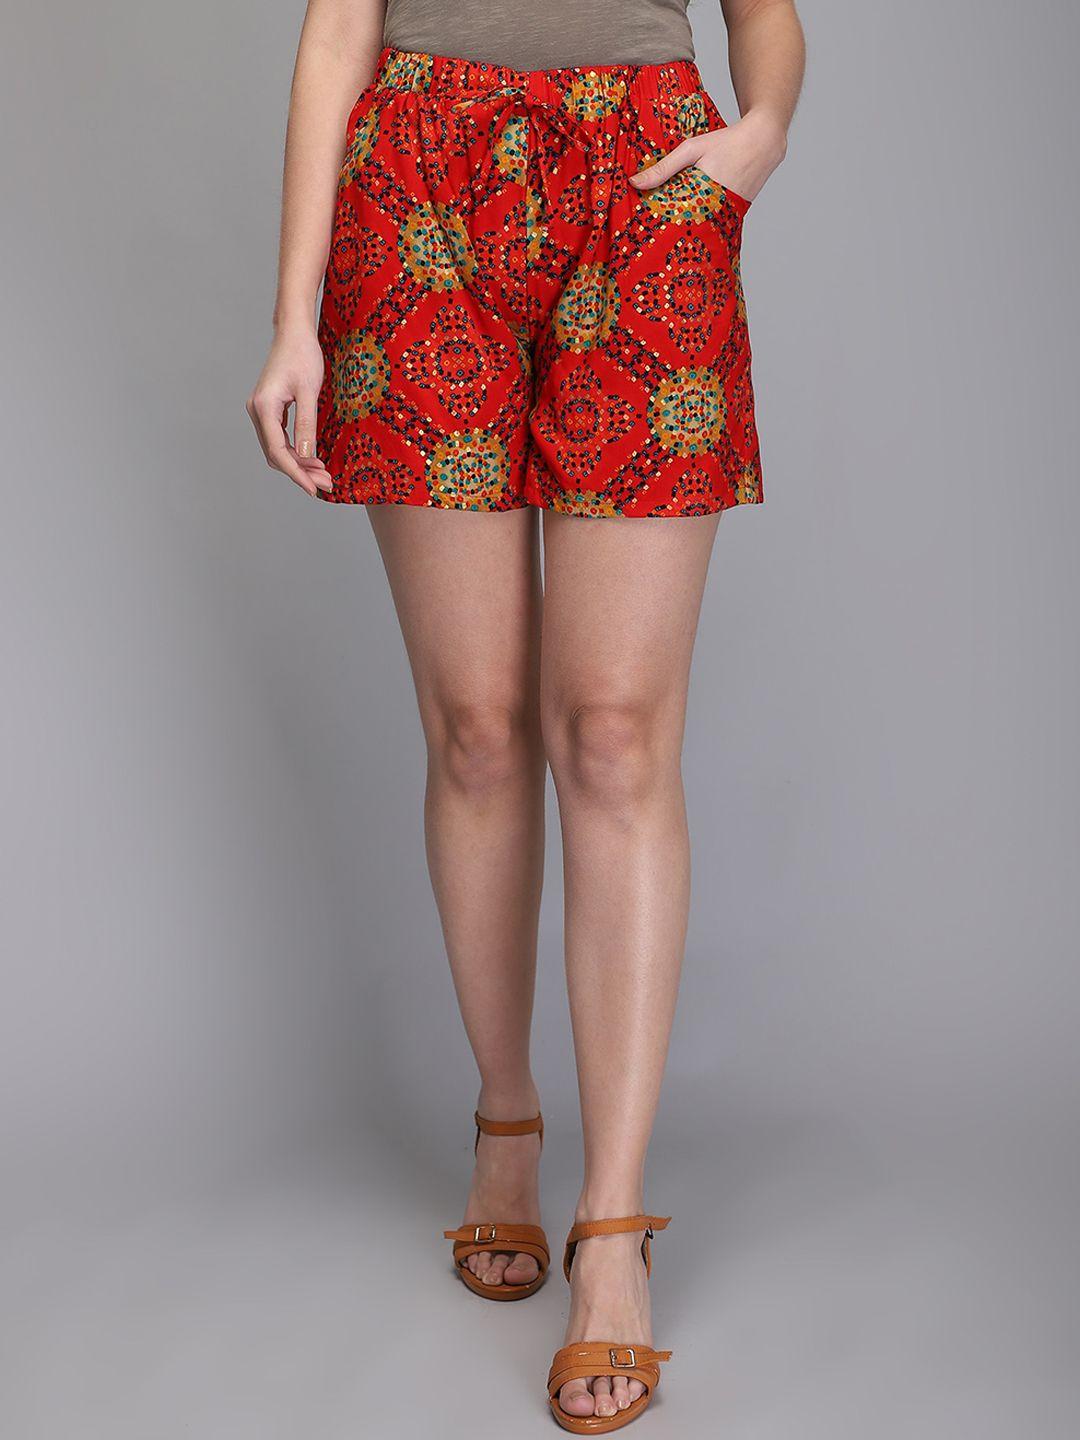 aditi-wasan-women-floral-printed-mid-rise-shorts